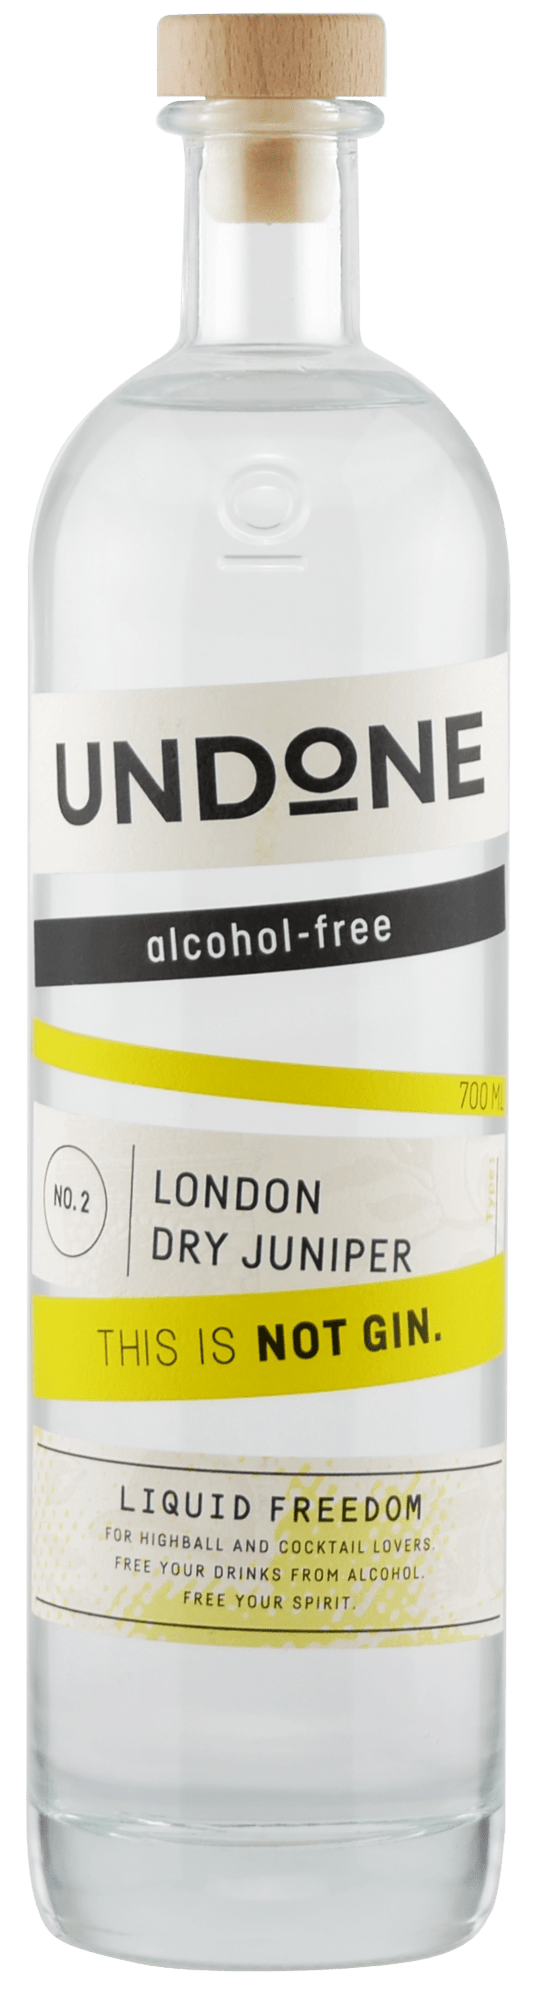 Non-alcoholic Not drink Undone Gin | Bondston - No.2